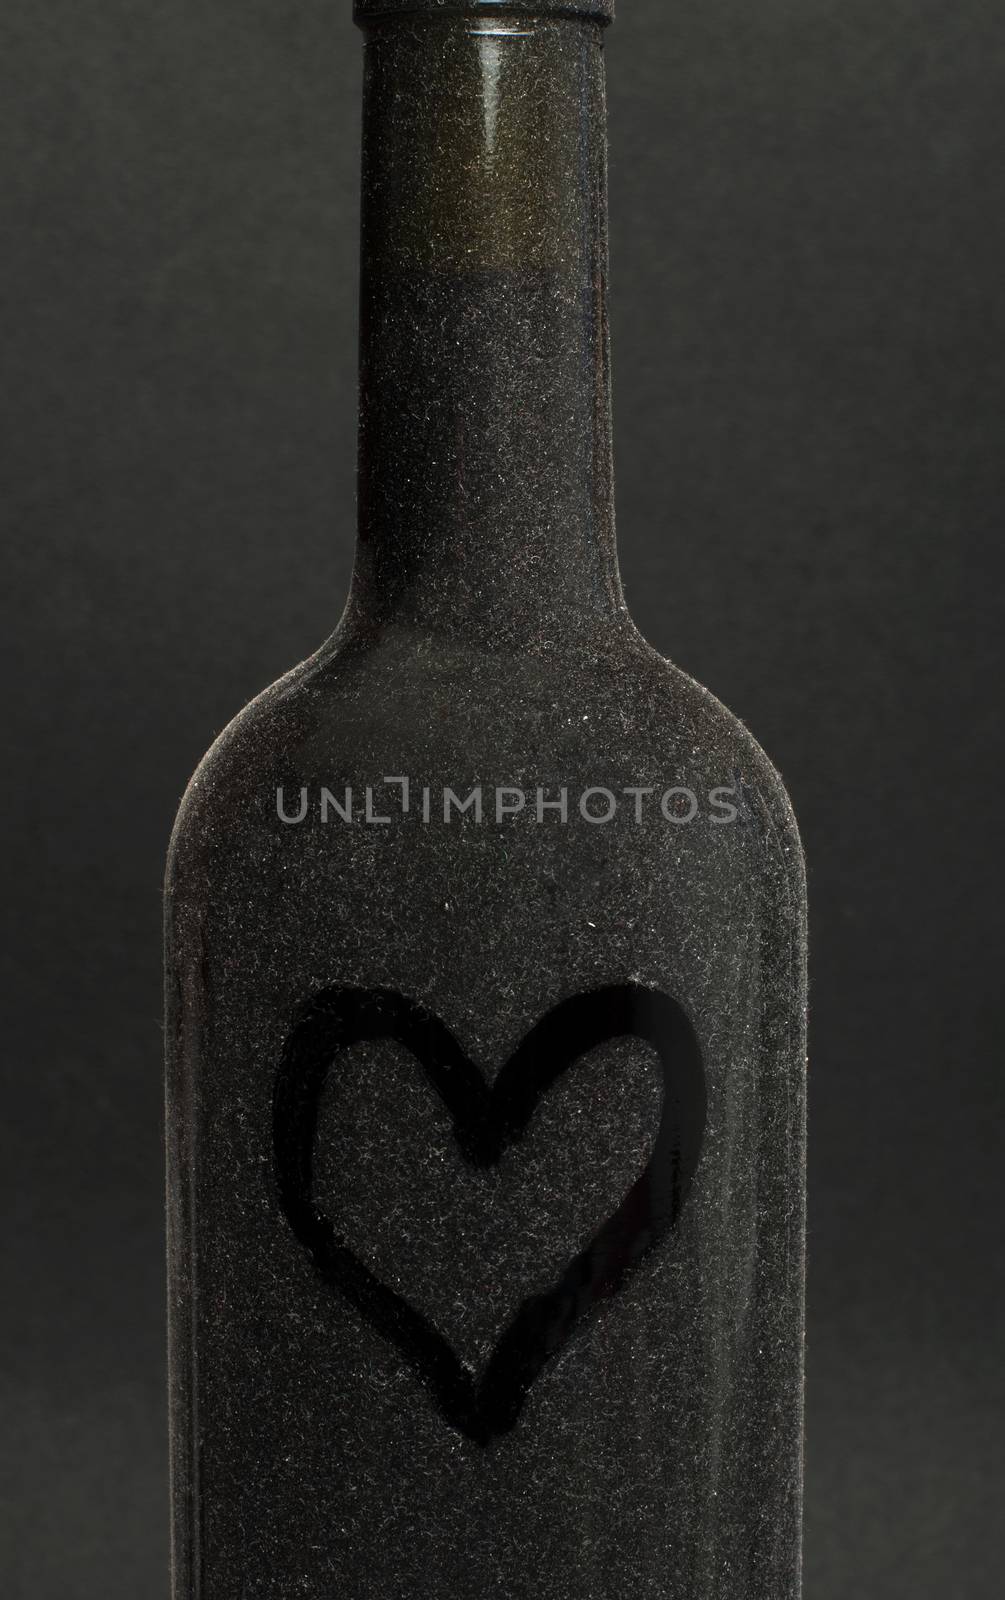 Heart painted on a wine bottle by deyan_georgiev